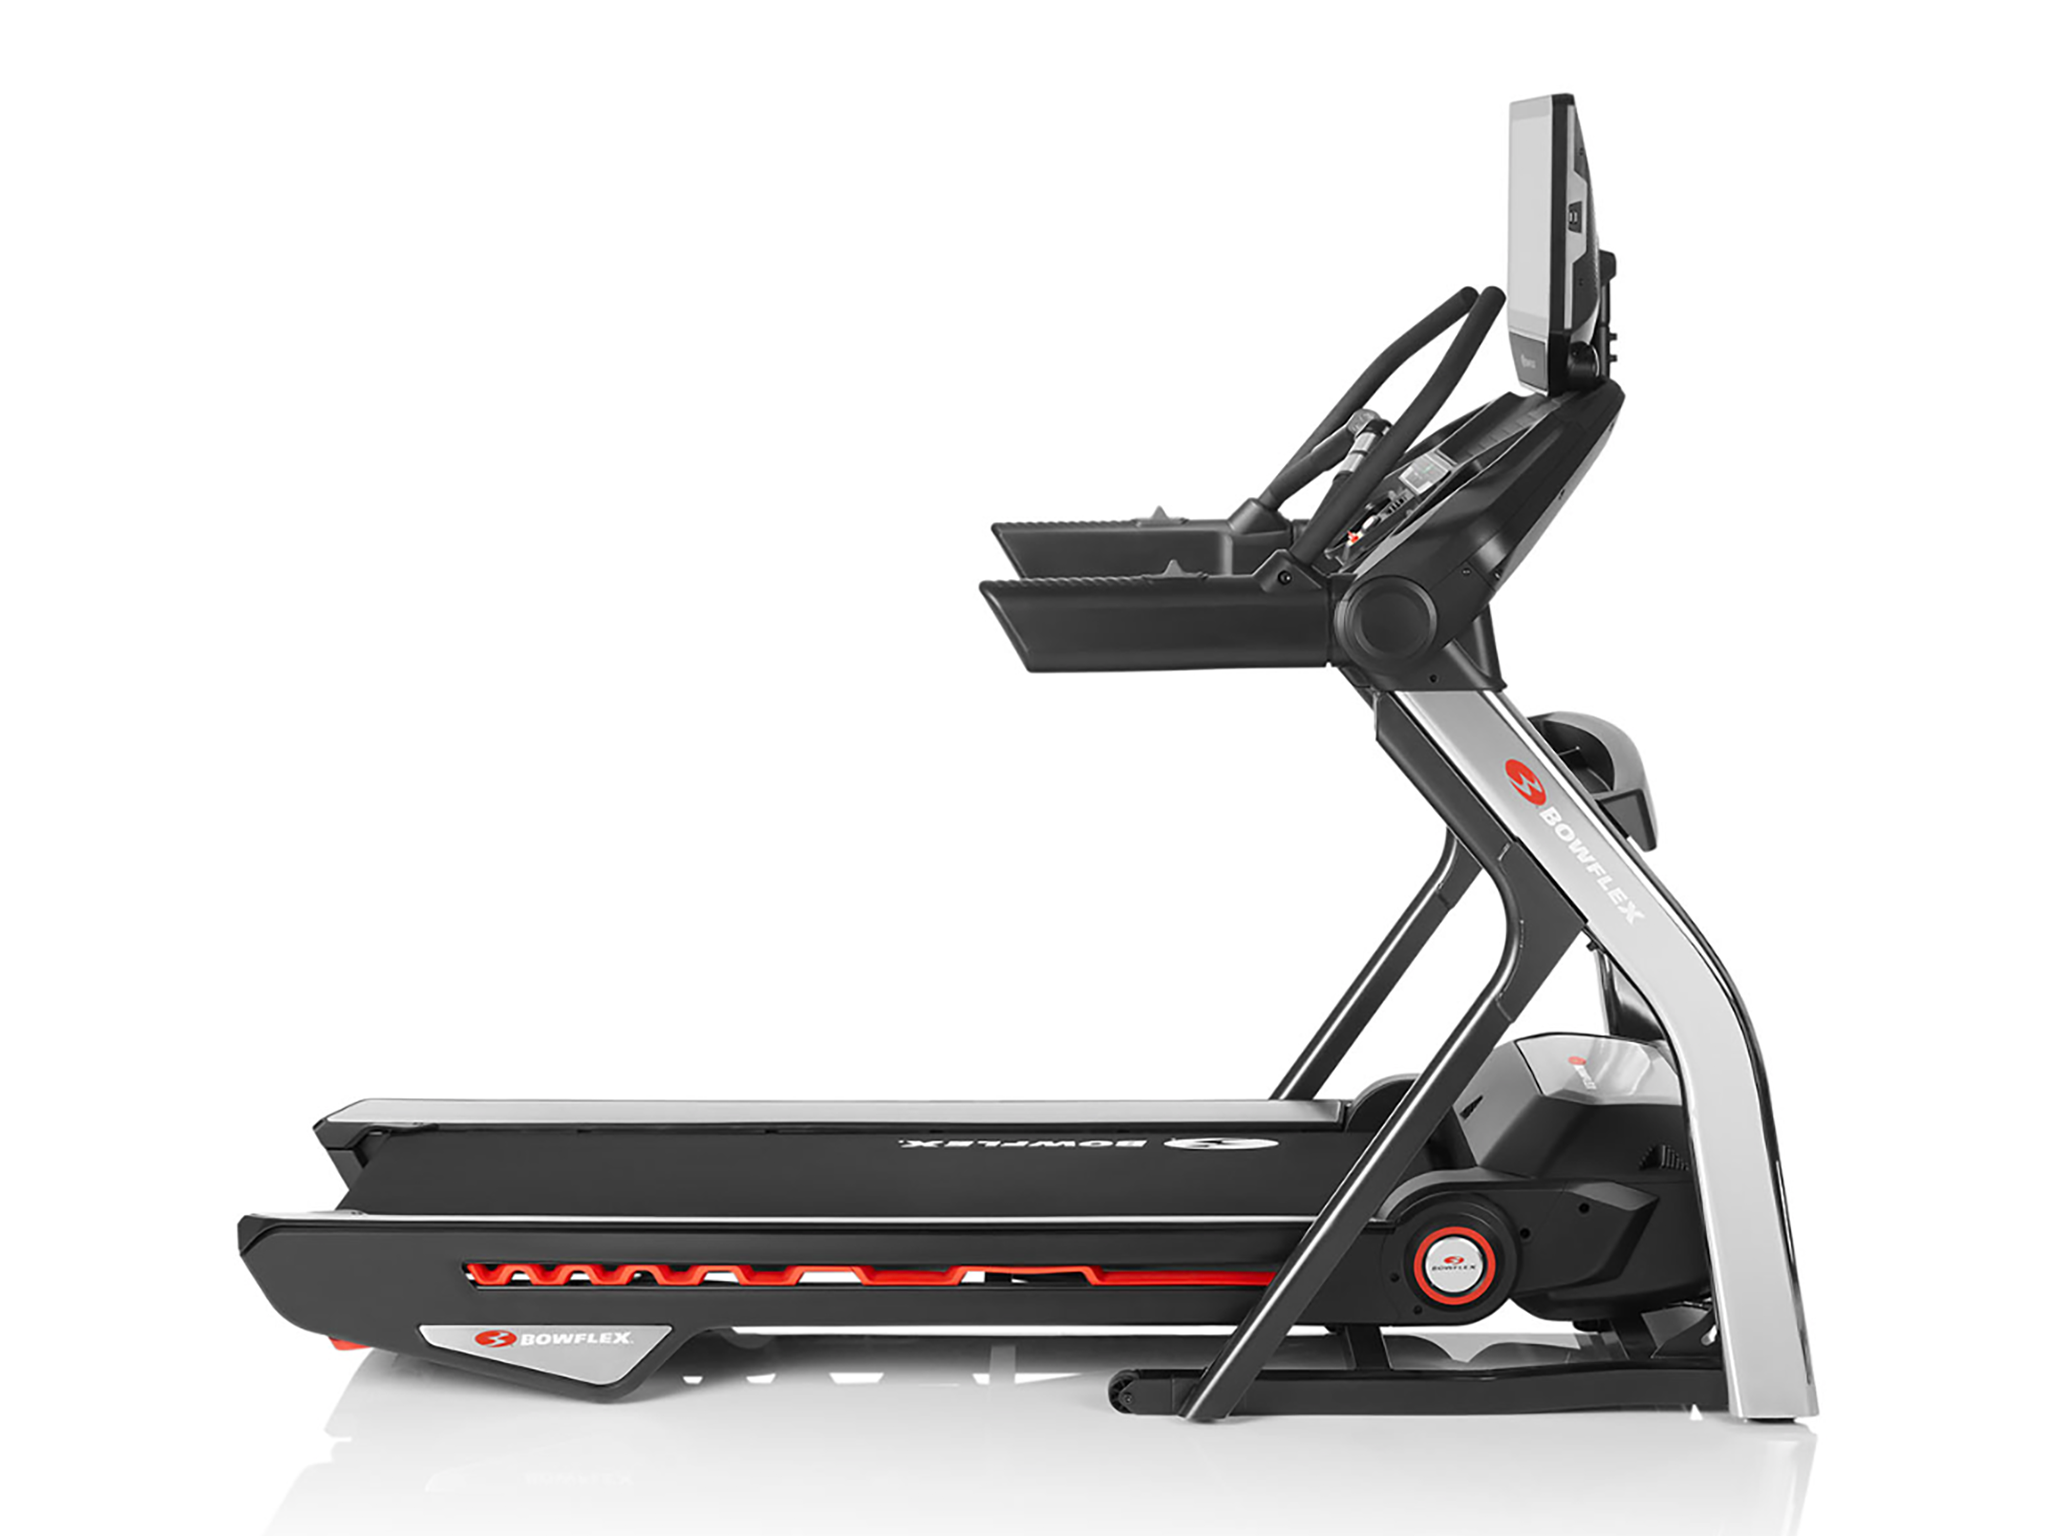 Blowflex BFX56 folding treadmill